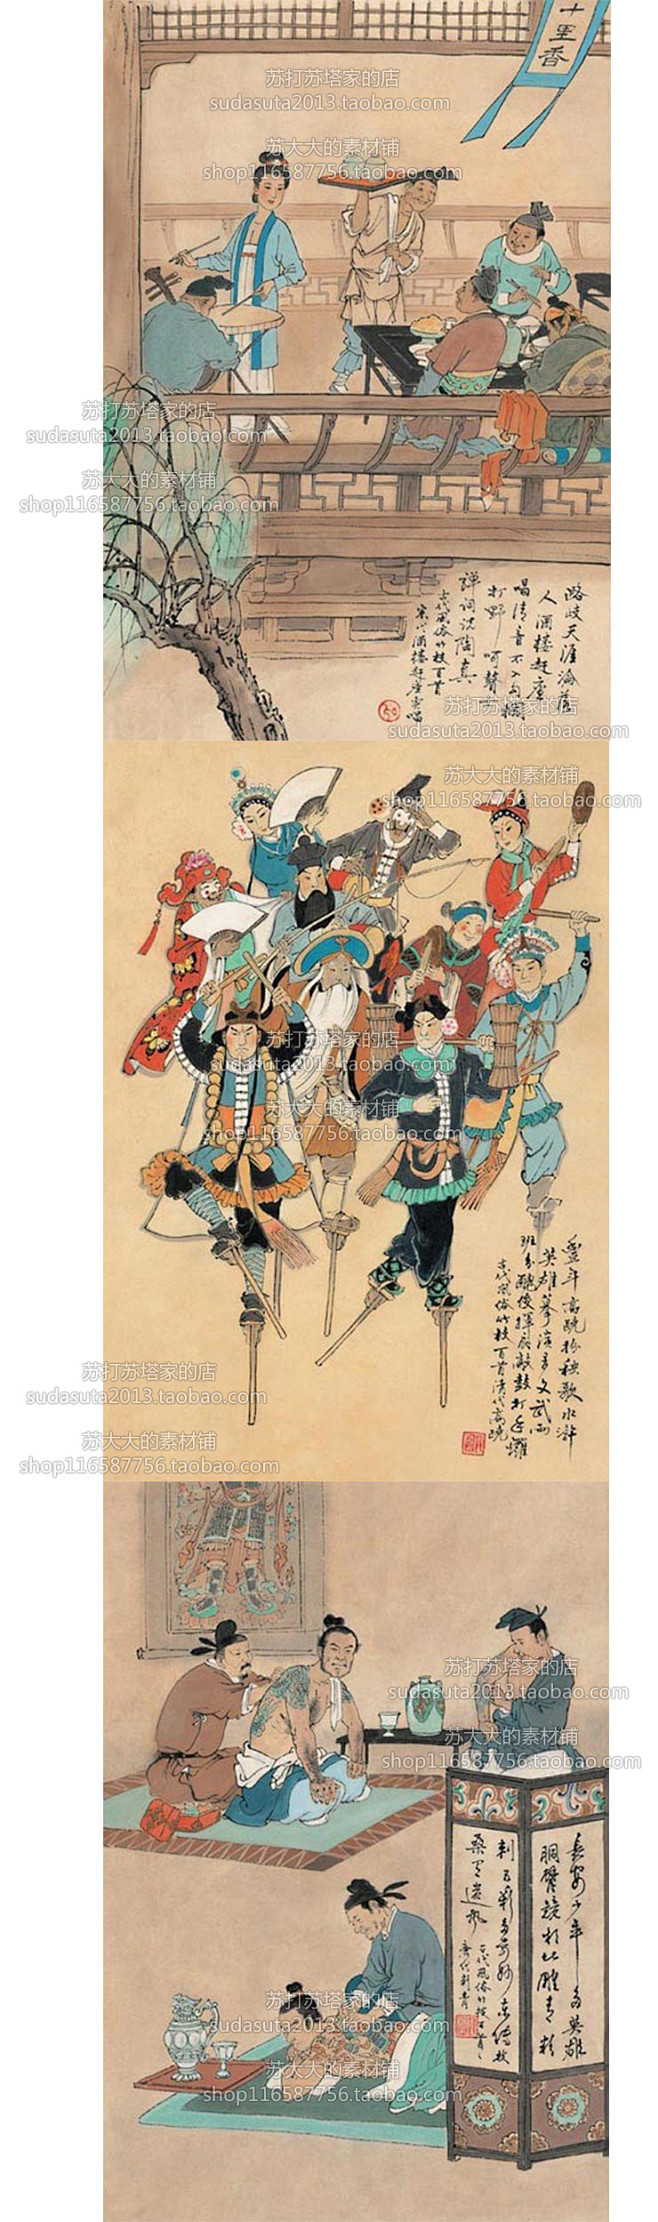 74张传统中国古画风俗习惯图片jpg素材...